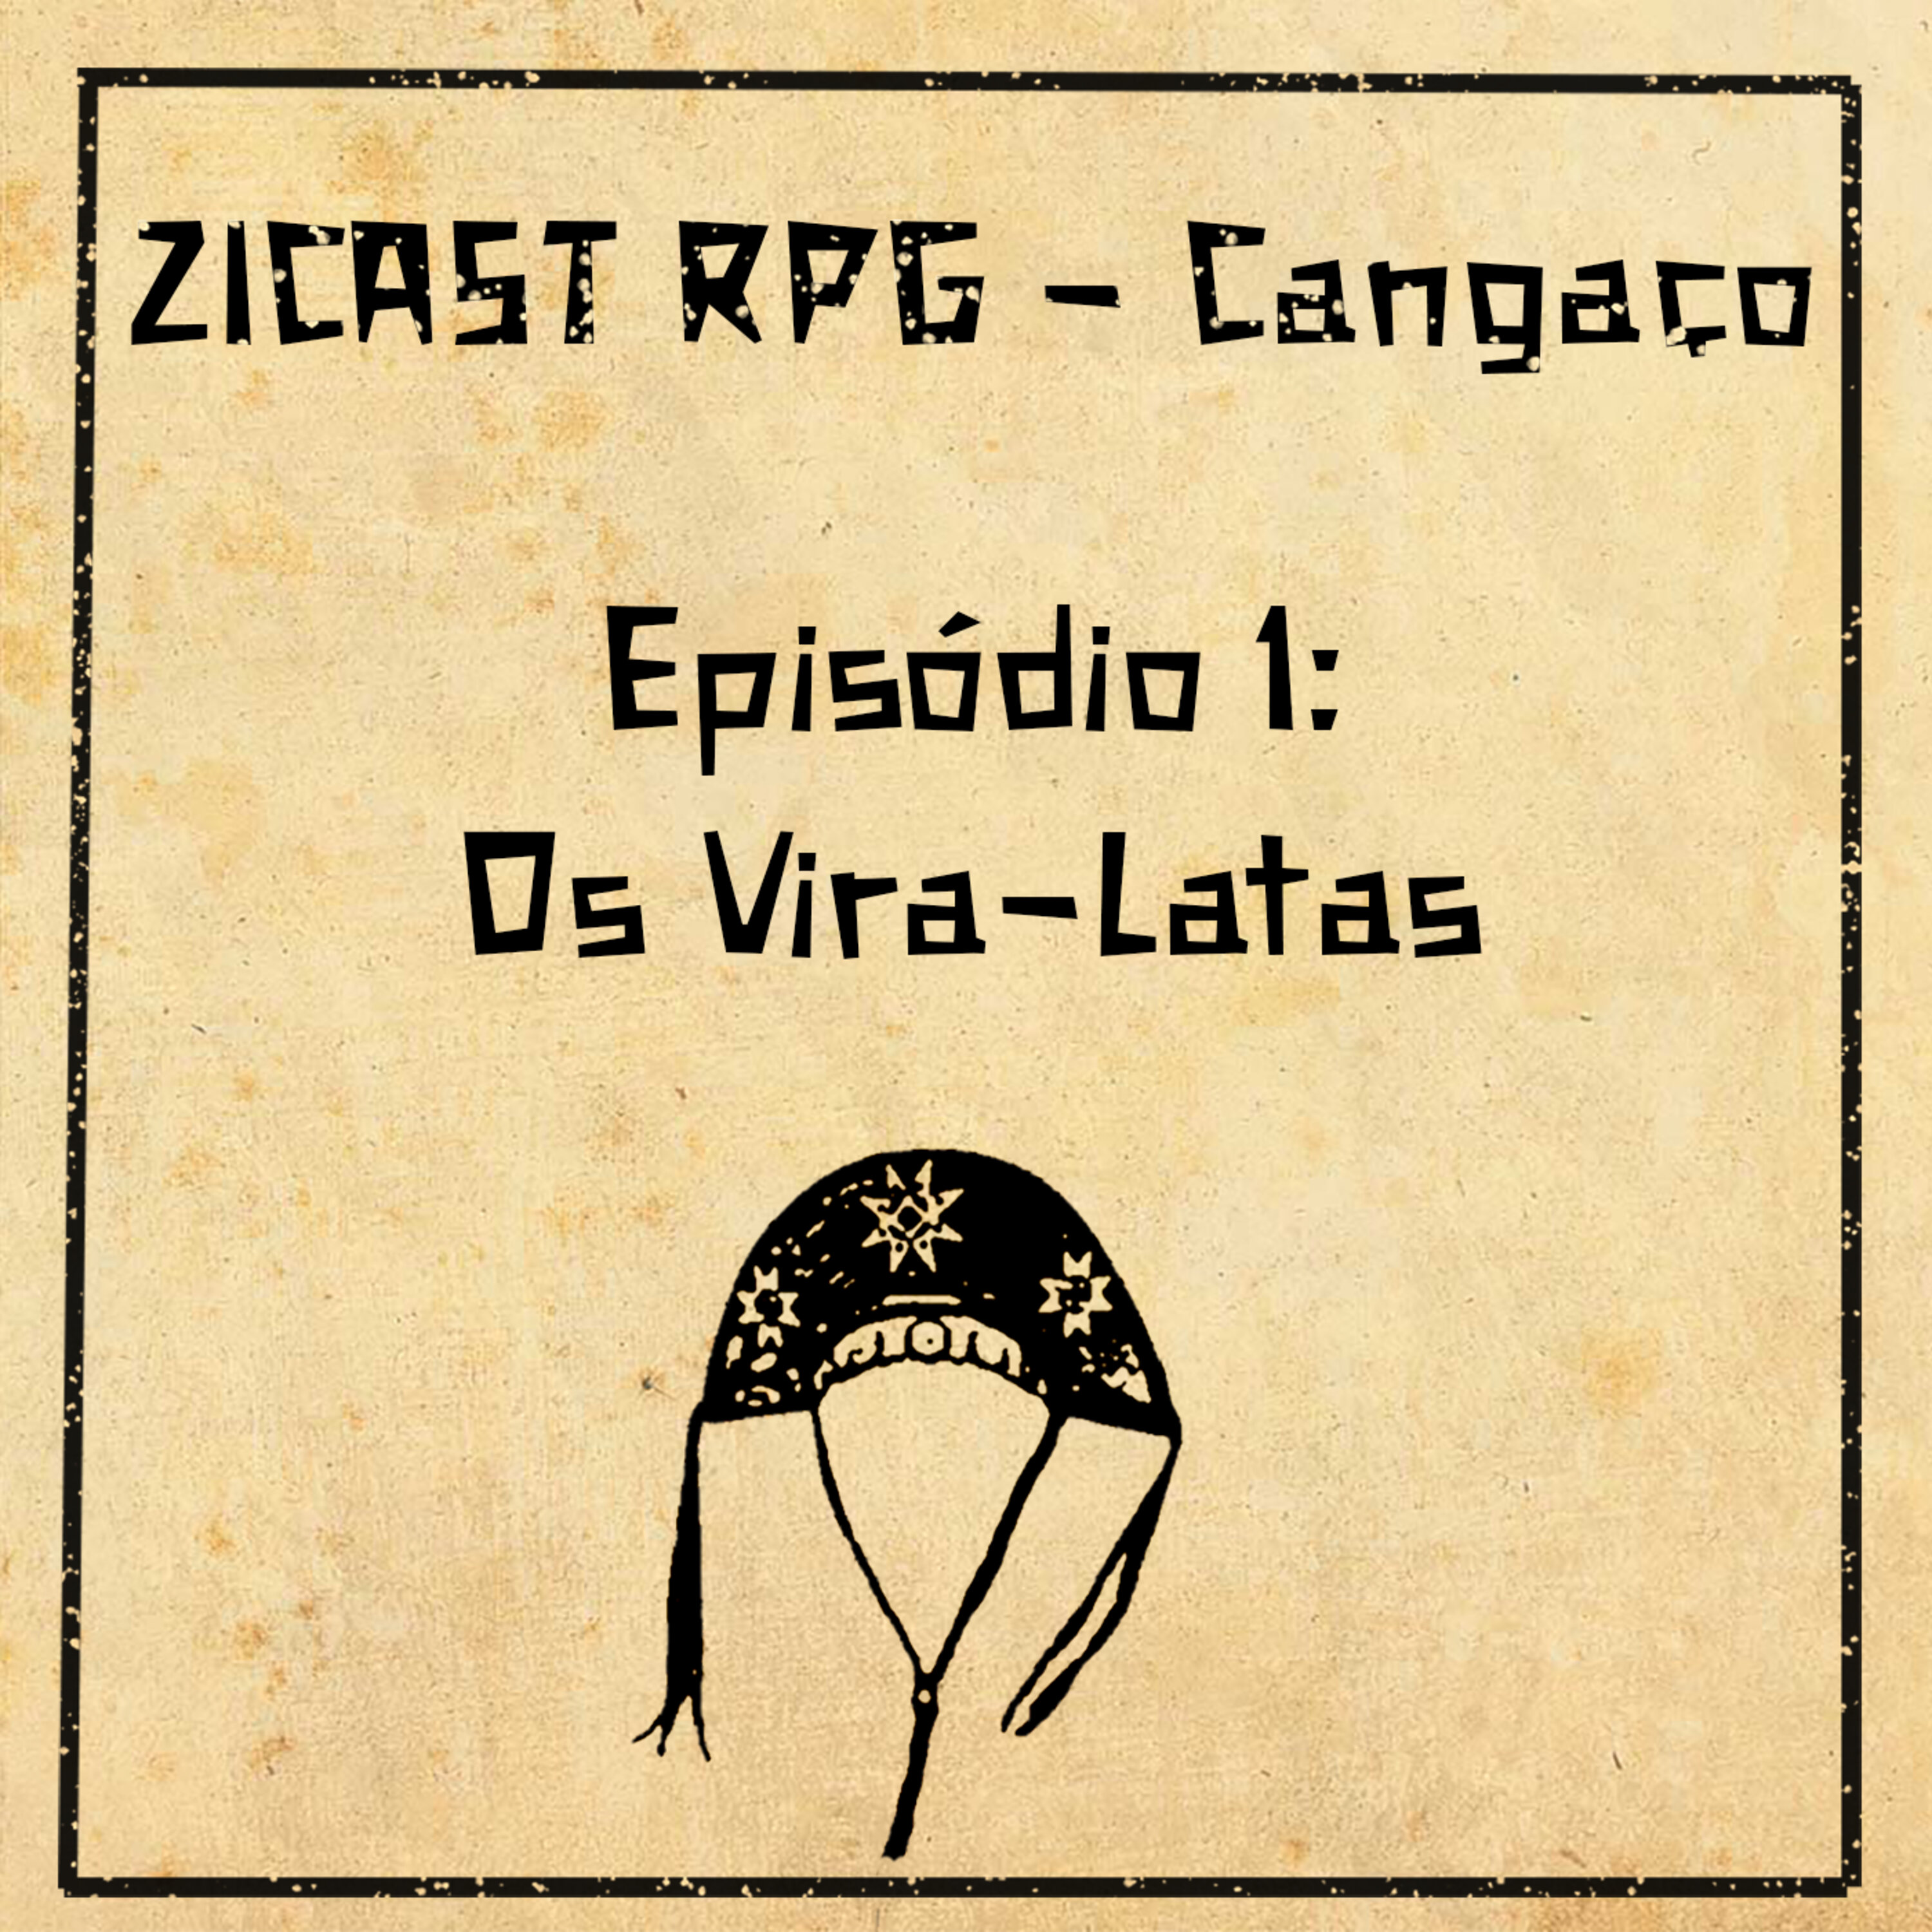 ZiCast RPG - Cangaço 01: Os Vira-Latas